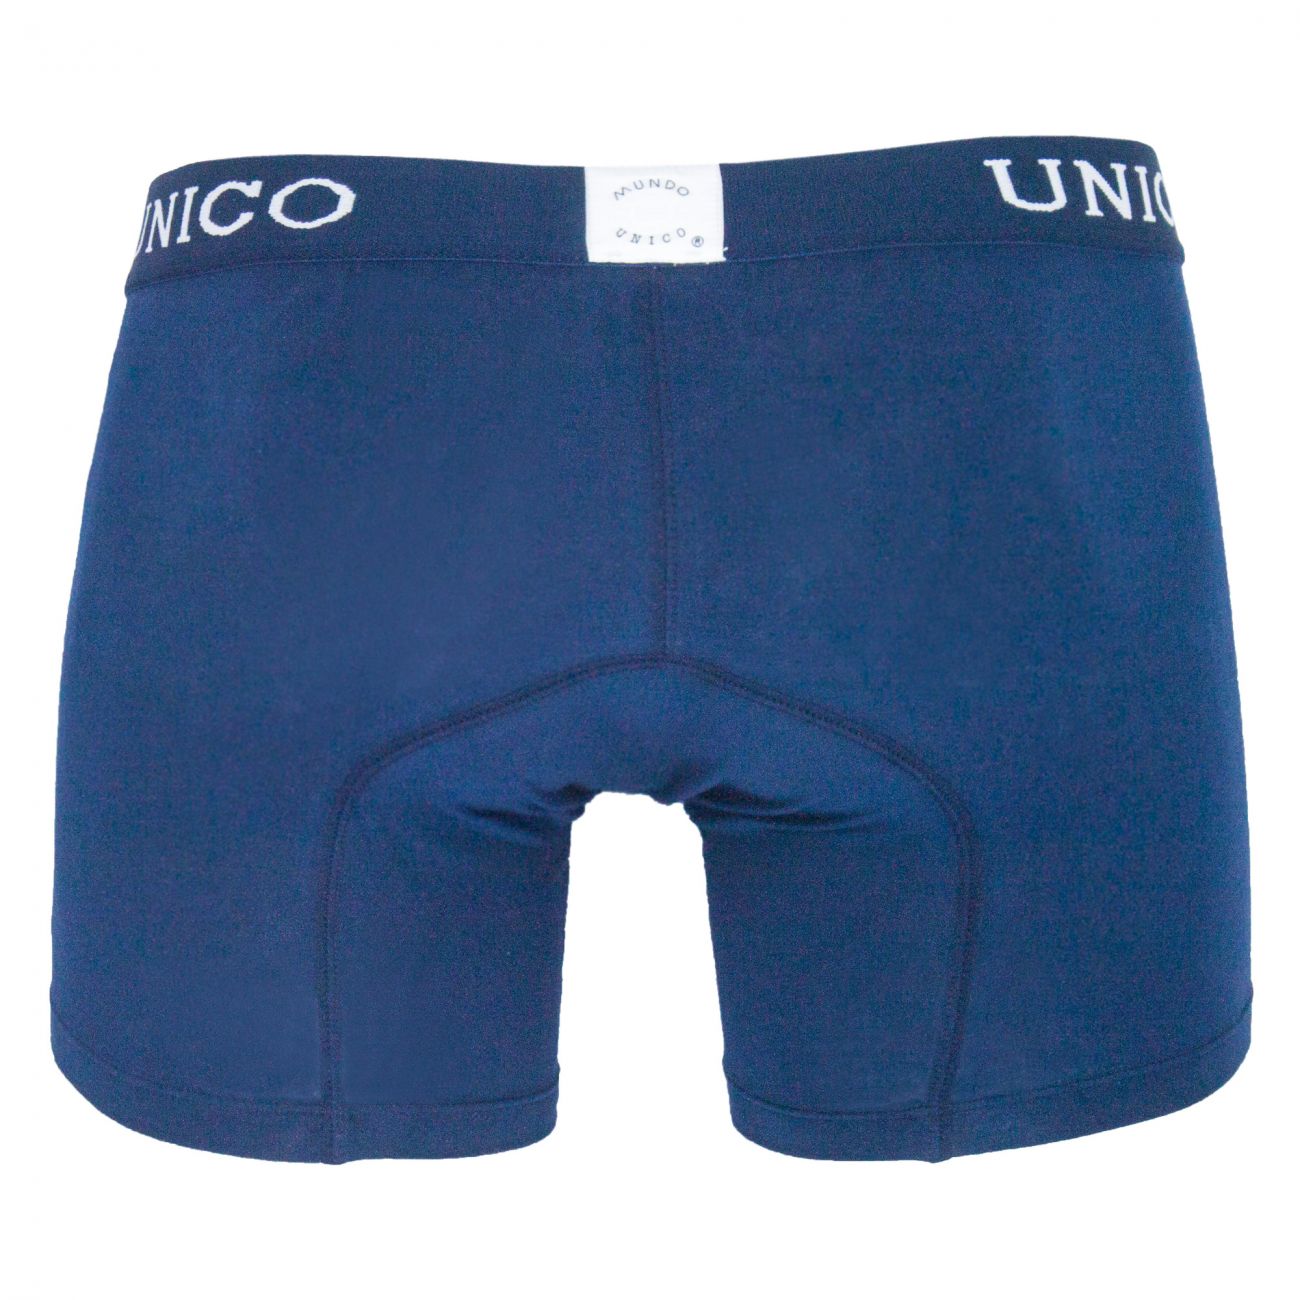 Unico 9610090182 Boxer Briefs Profundo Blue